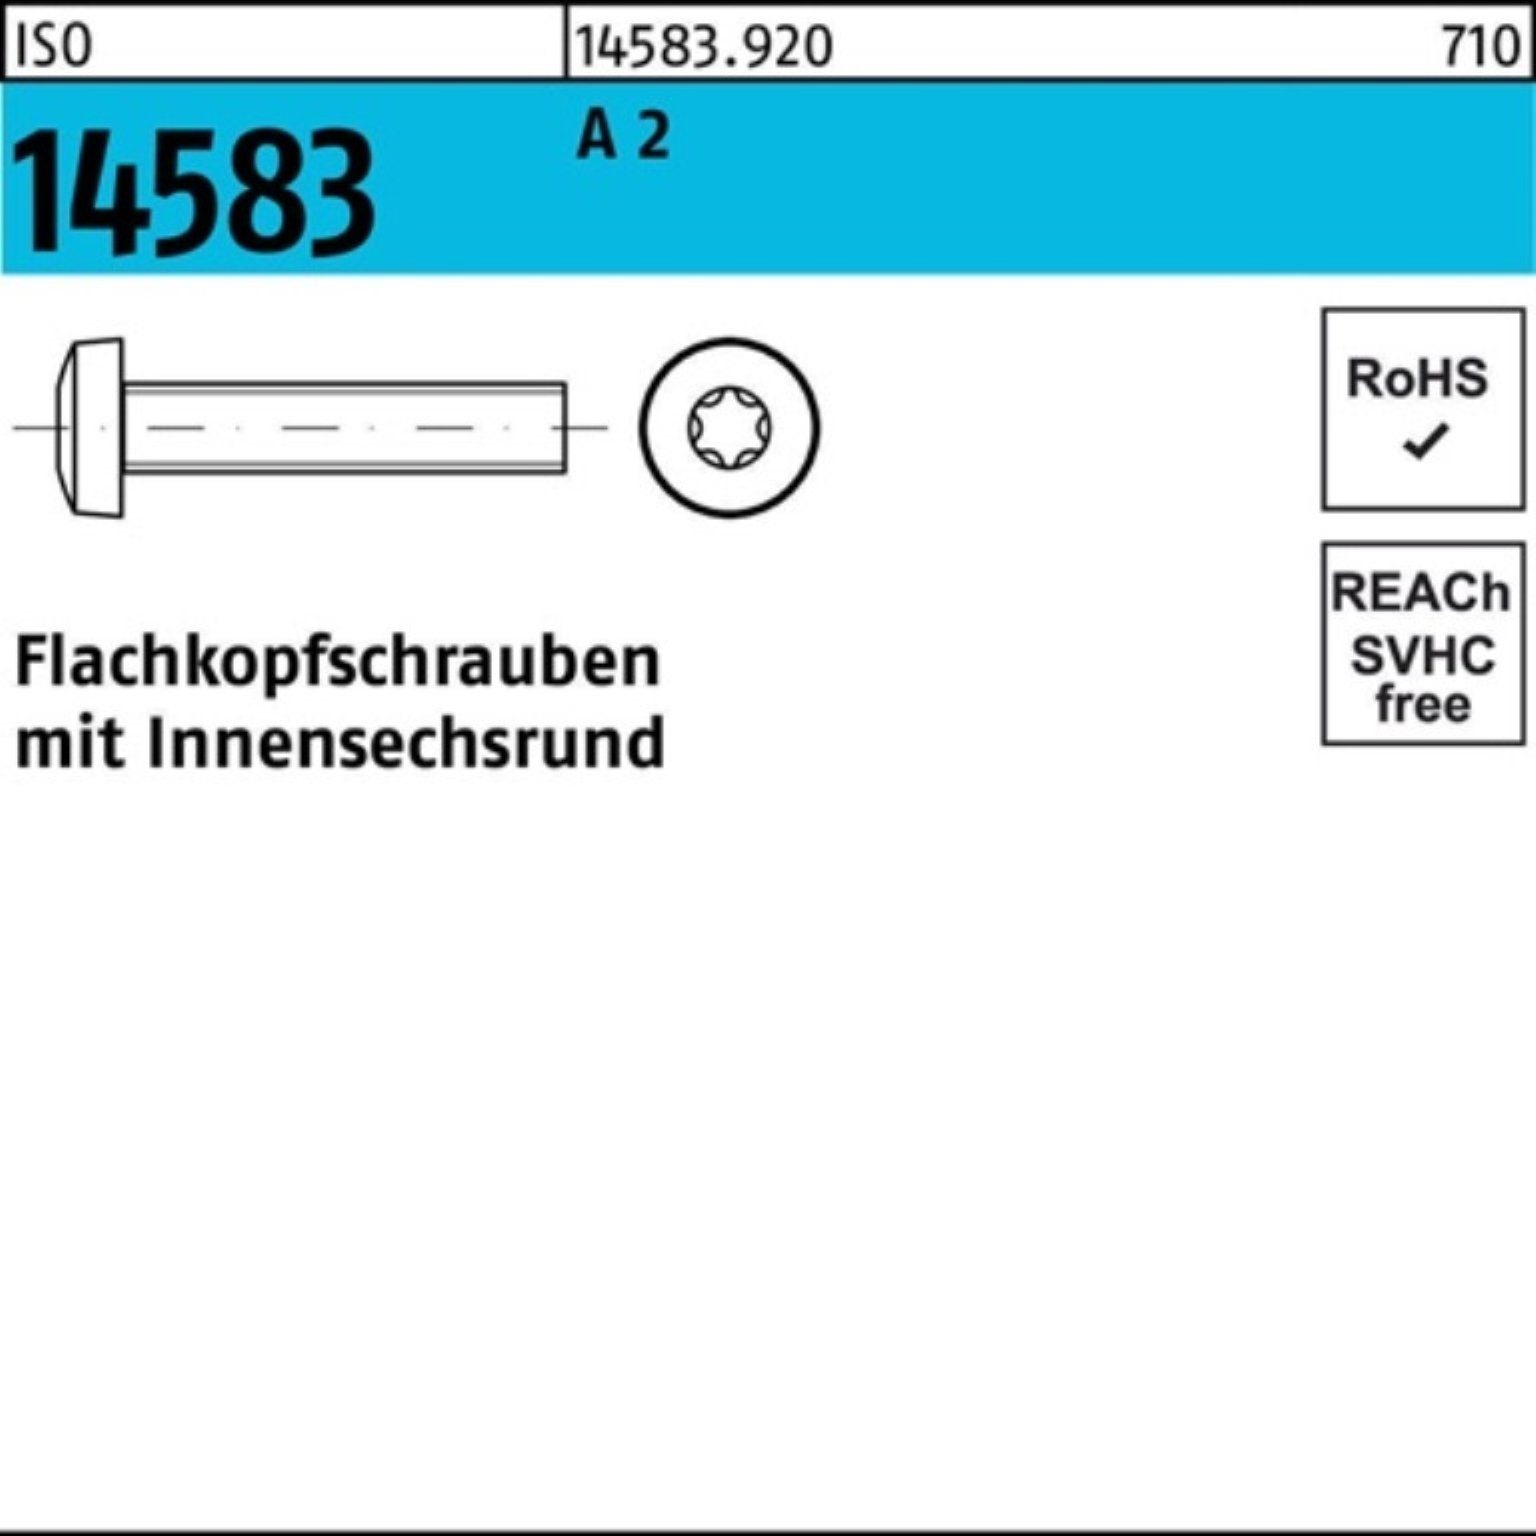 1000er Flachkopfschraube M1,6x ISO Schraube Reyher A 14583 4 IS 1000 2 ISR Pack Stück